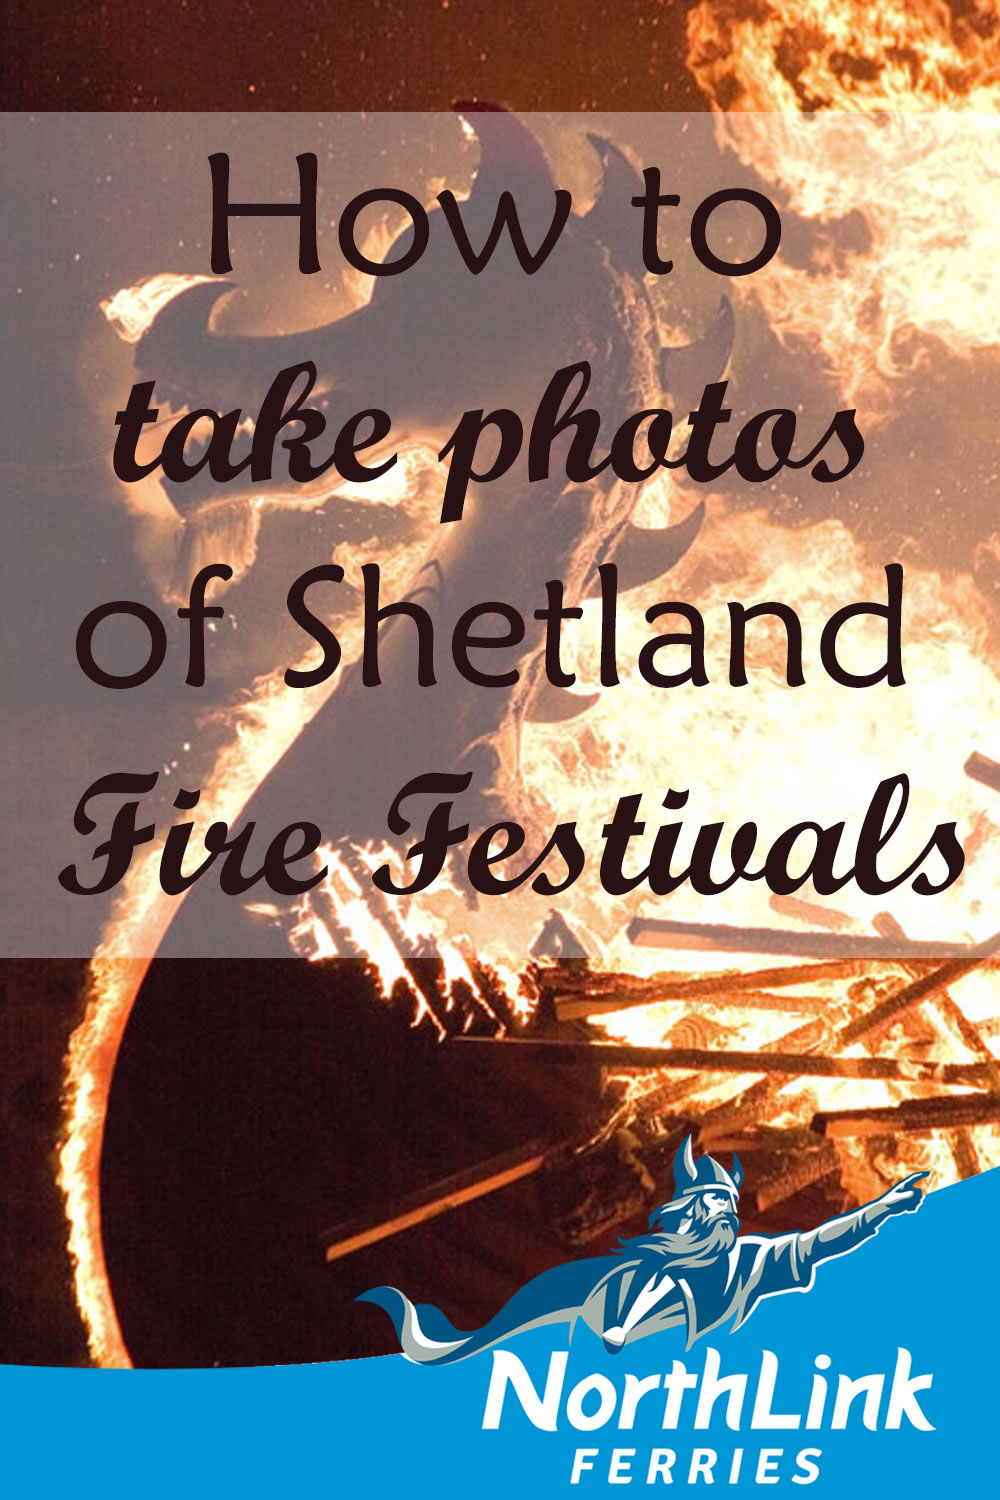 How to take photos of Shetland Fire Festivals